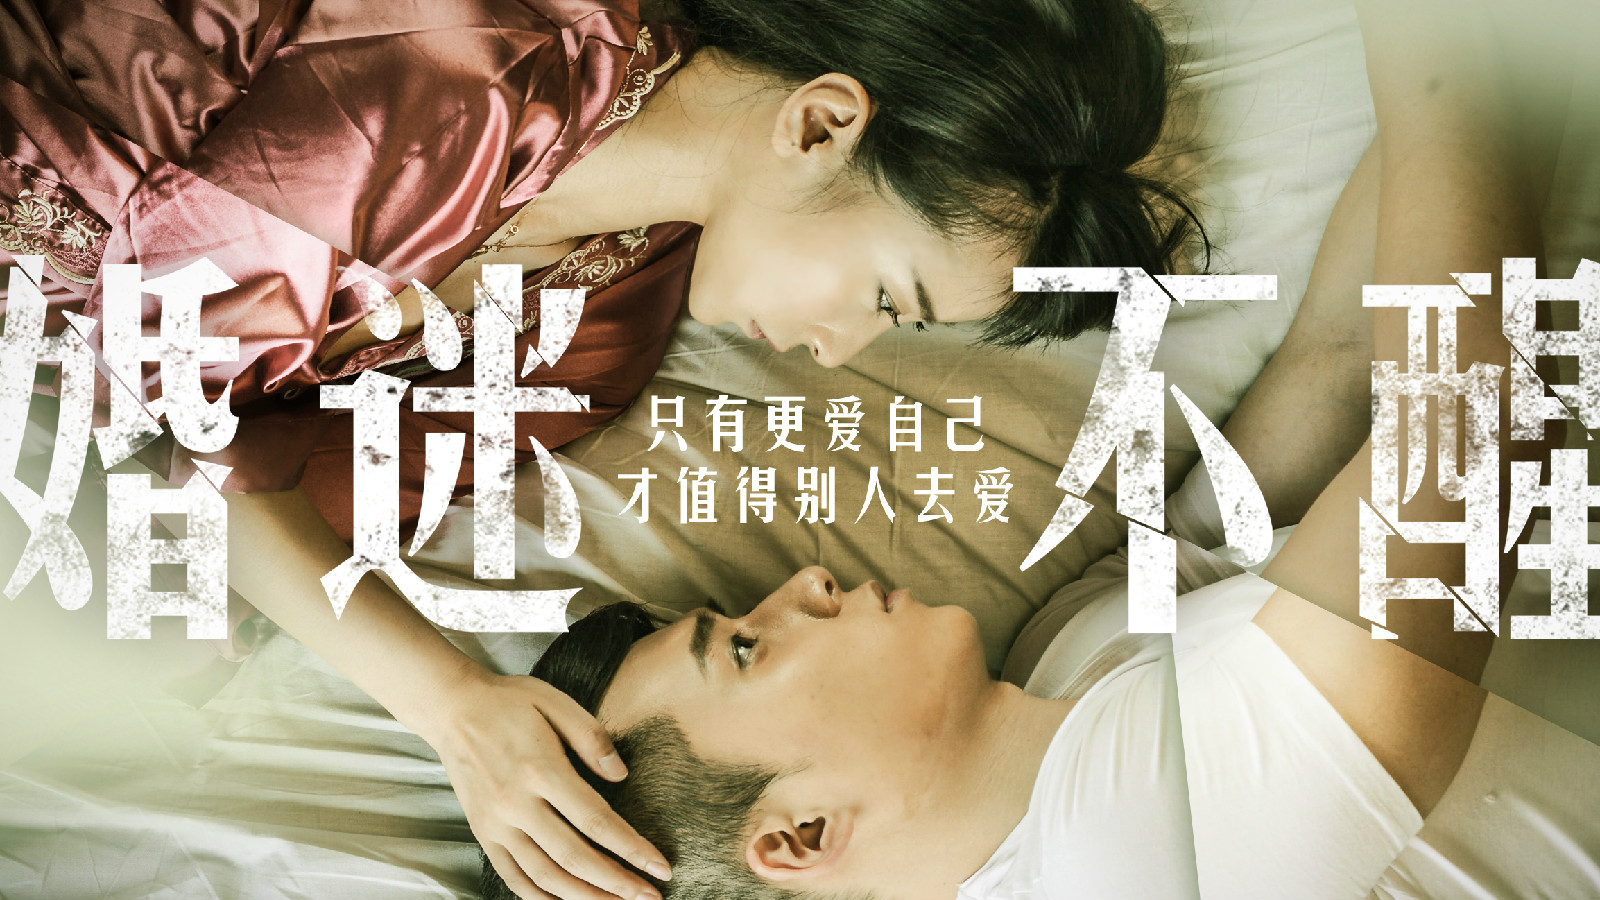 婚迷不醒(2015年婚戀網路大電影)